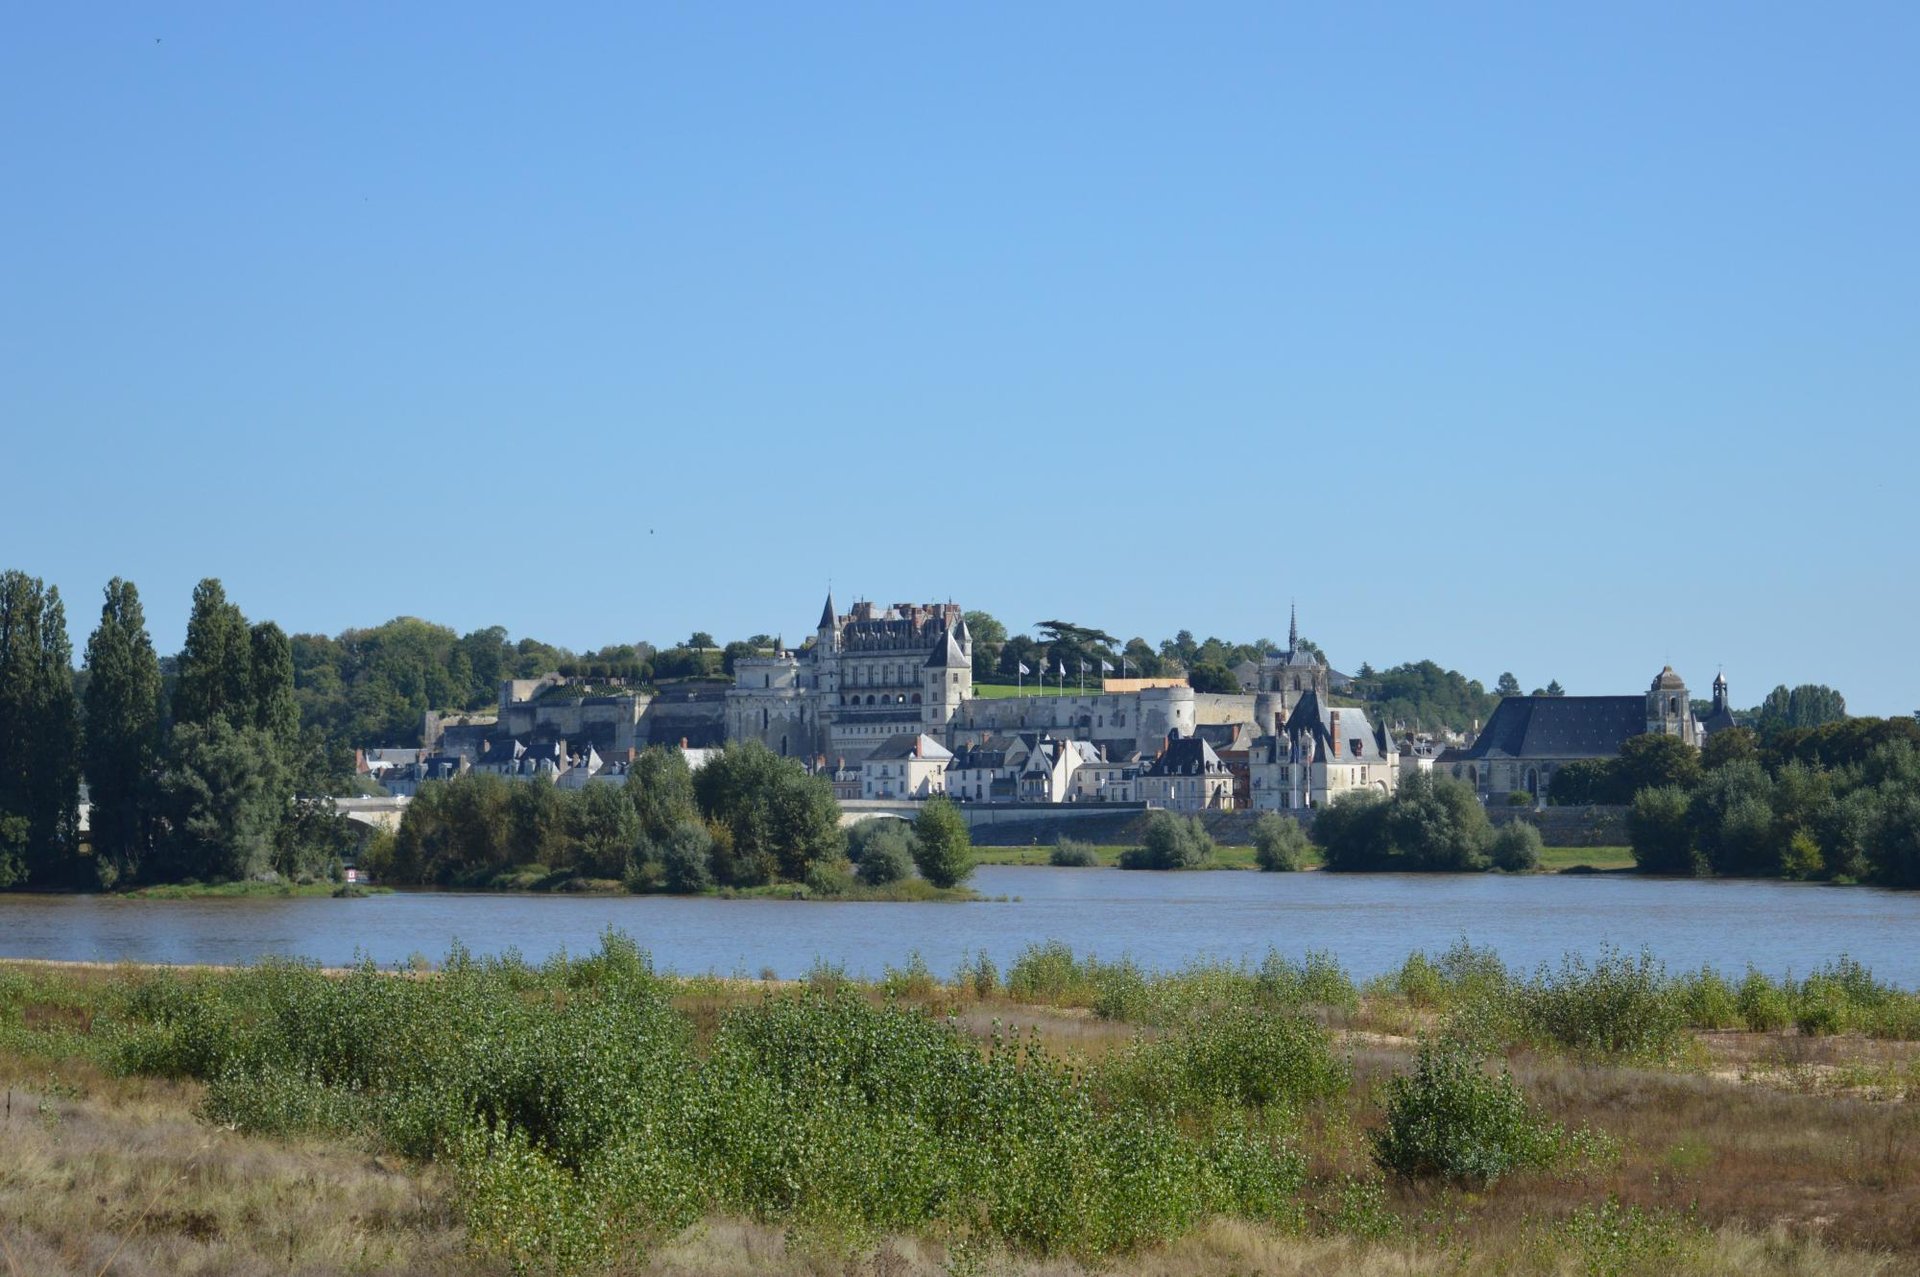 Château Louise de la Vallière | Outside